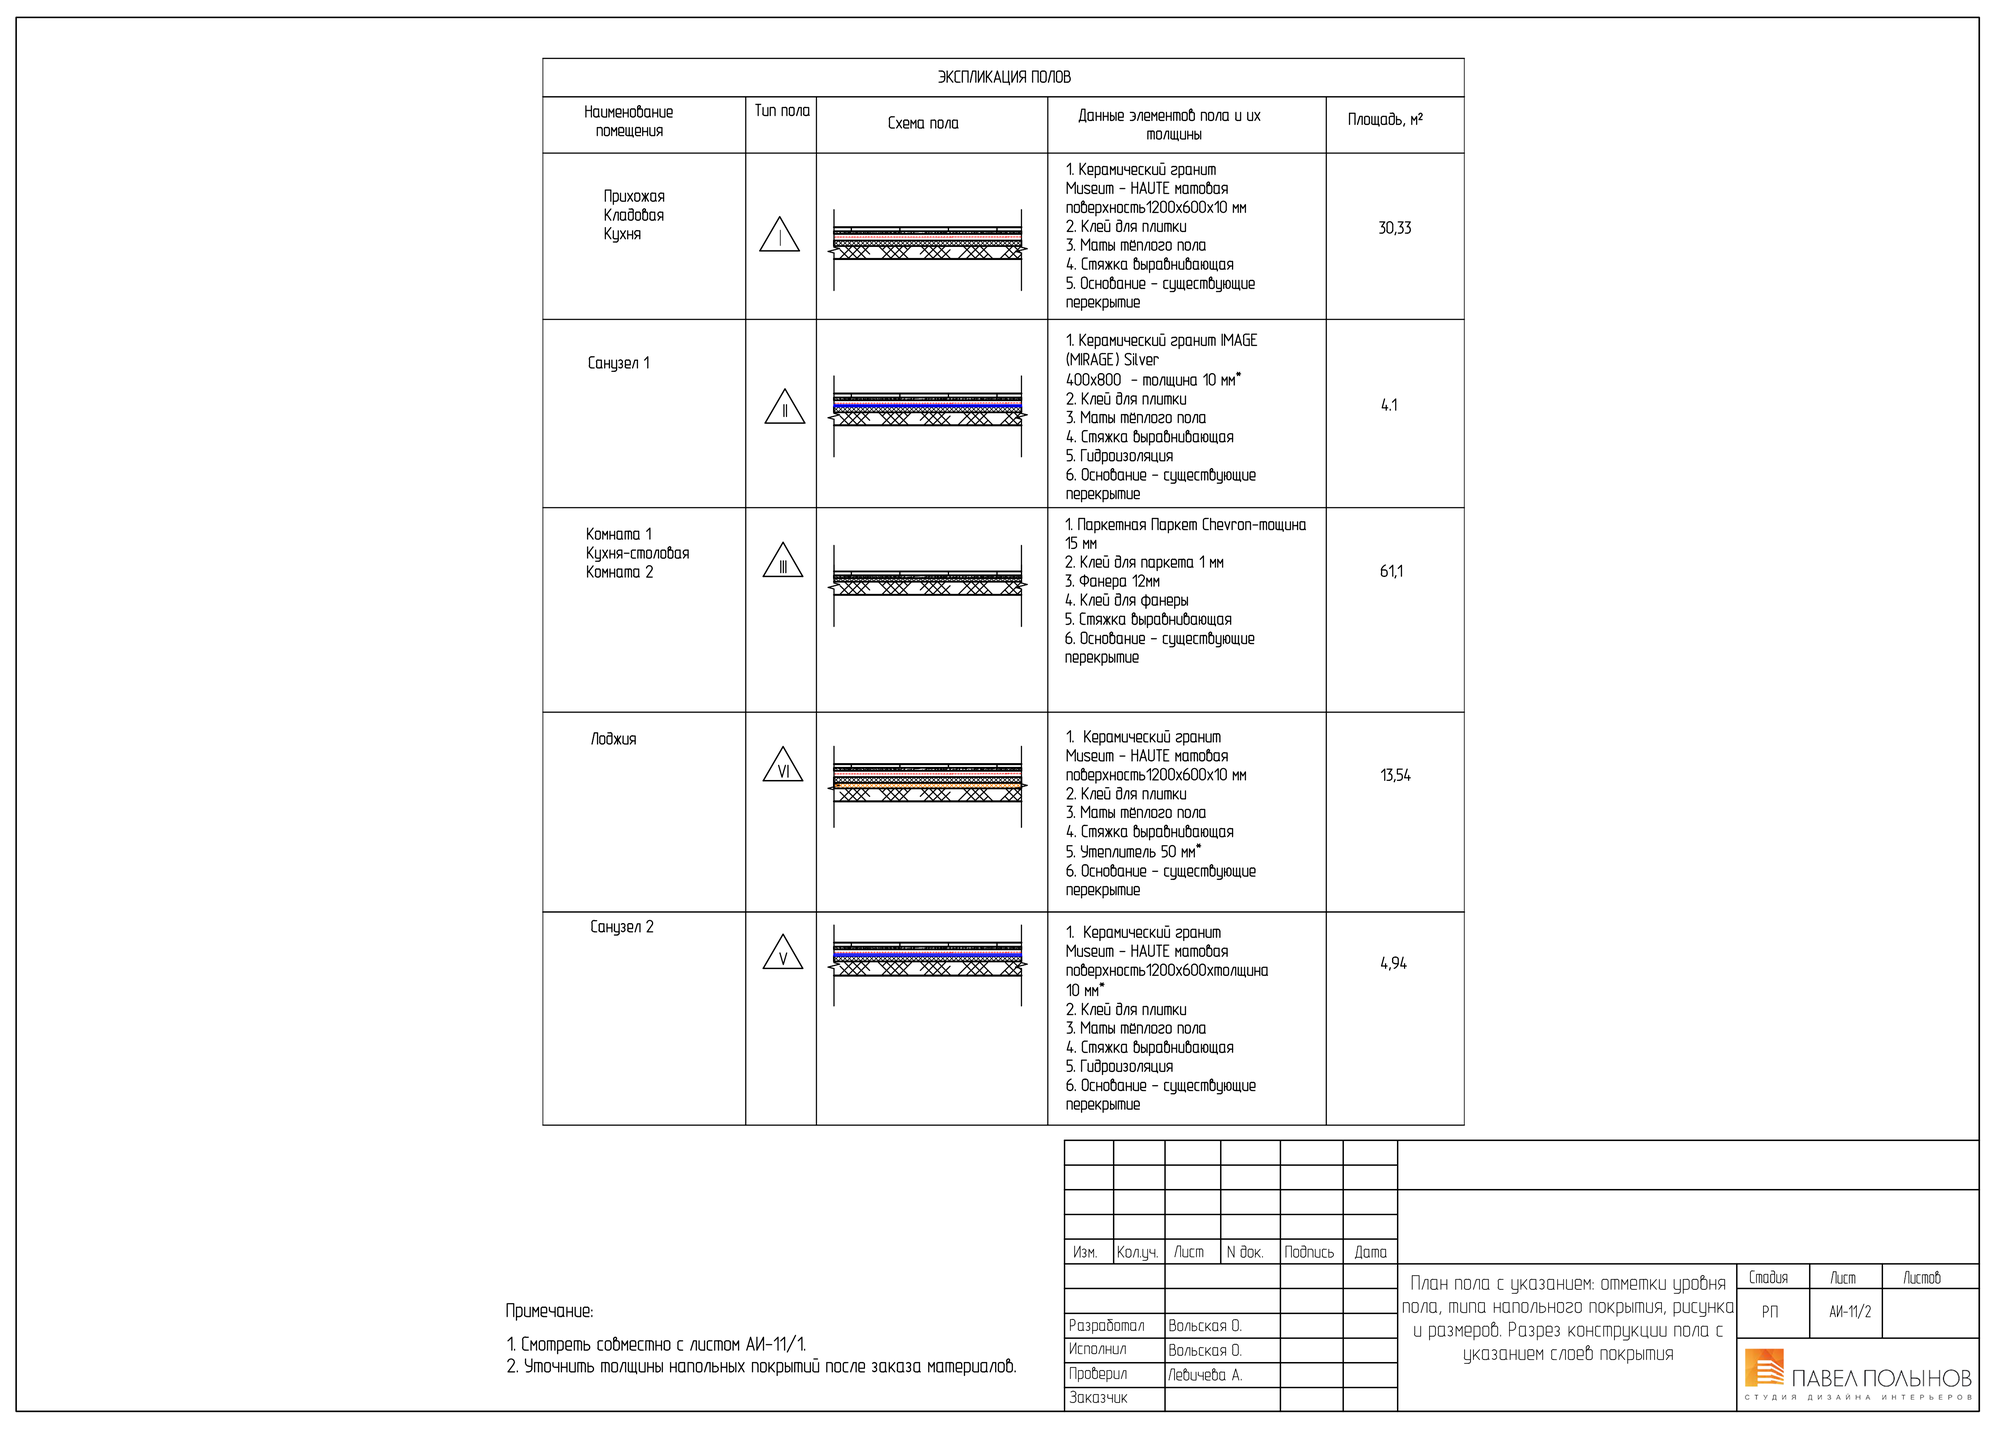 АИ-11.2 План пола с указанием: отметки уровня пола, типа напольного покрытия, рисунка и размеров. Разрез конструкции пола с указанием слоев покрытия